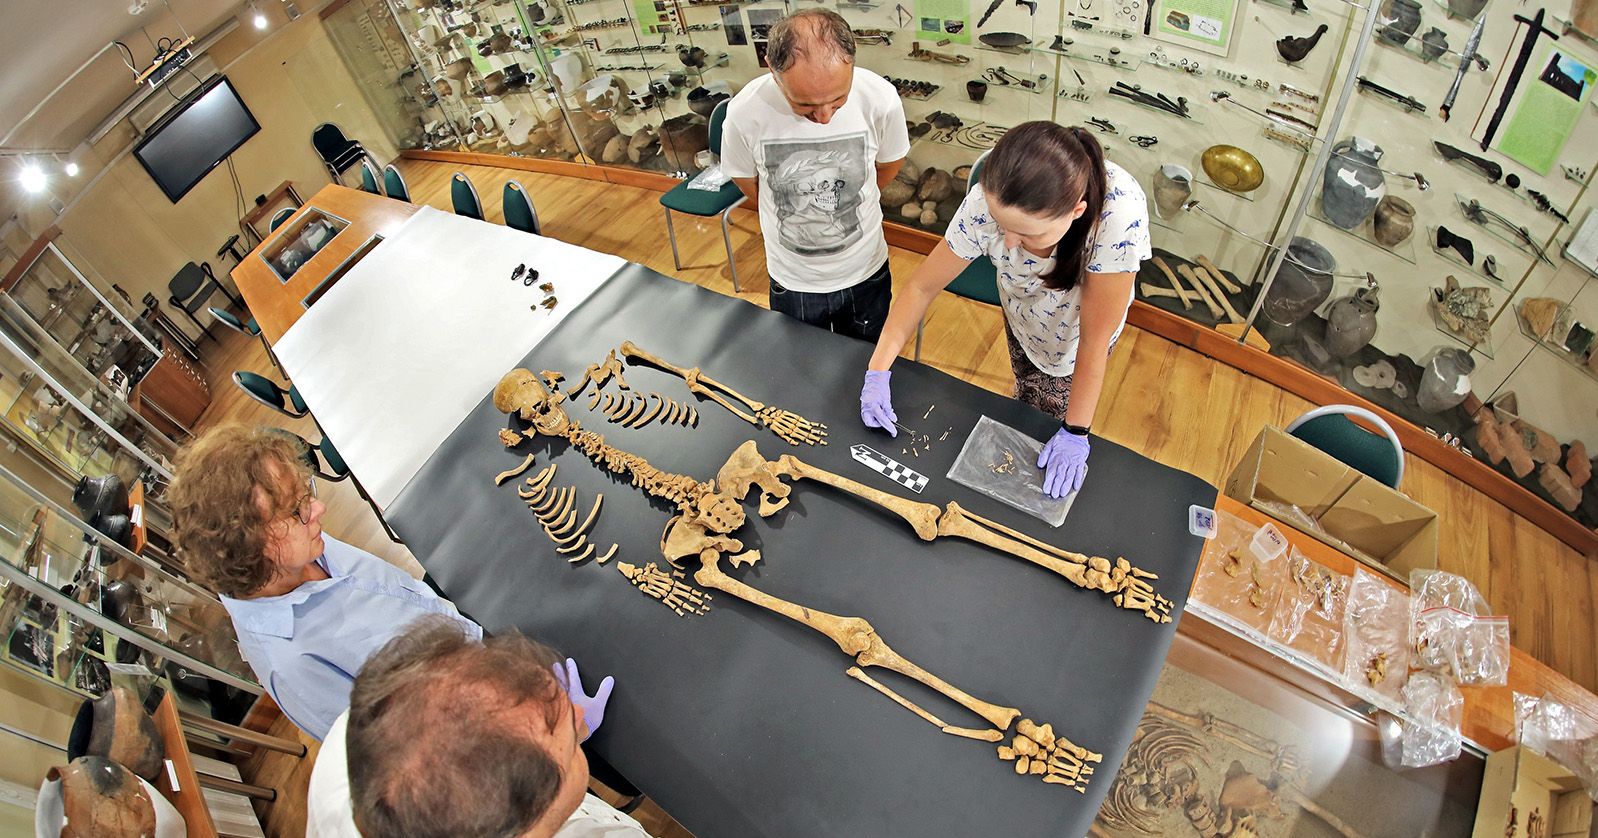 Naukowcy odnaleźli w Pniu szkielet ciężarnej kobiety ze ściętym ramieniem. Kościec prawdopodobnie uszkodzono kopiąc obok kolejny grób. Naukowcy stoją nad odnalezionym w Pniu szkieletem kobiety ze ściętym ramieniem. Szkielet został rozłożony na czarnej materii wśród gablot z rekwizytami w Instytucie Archeologii UMK.